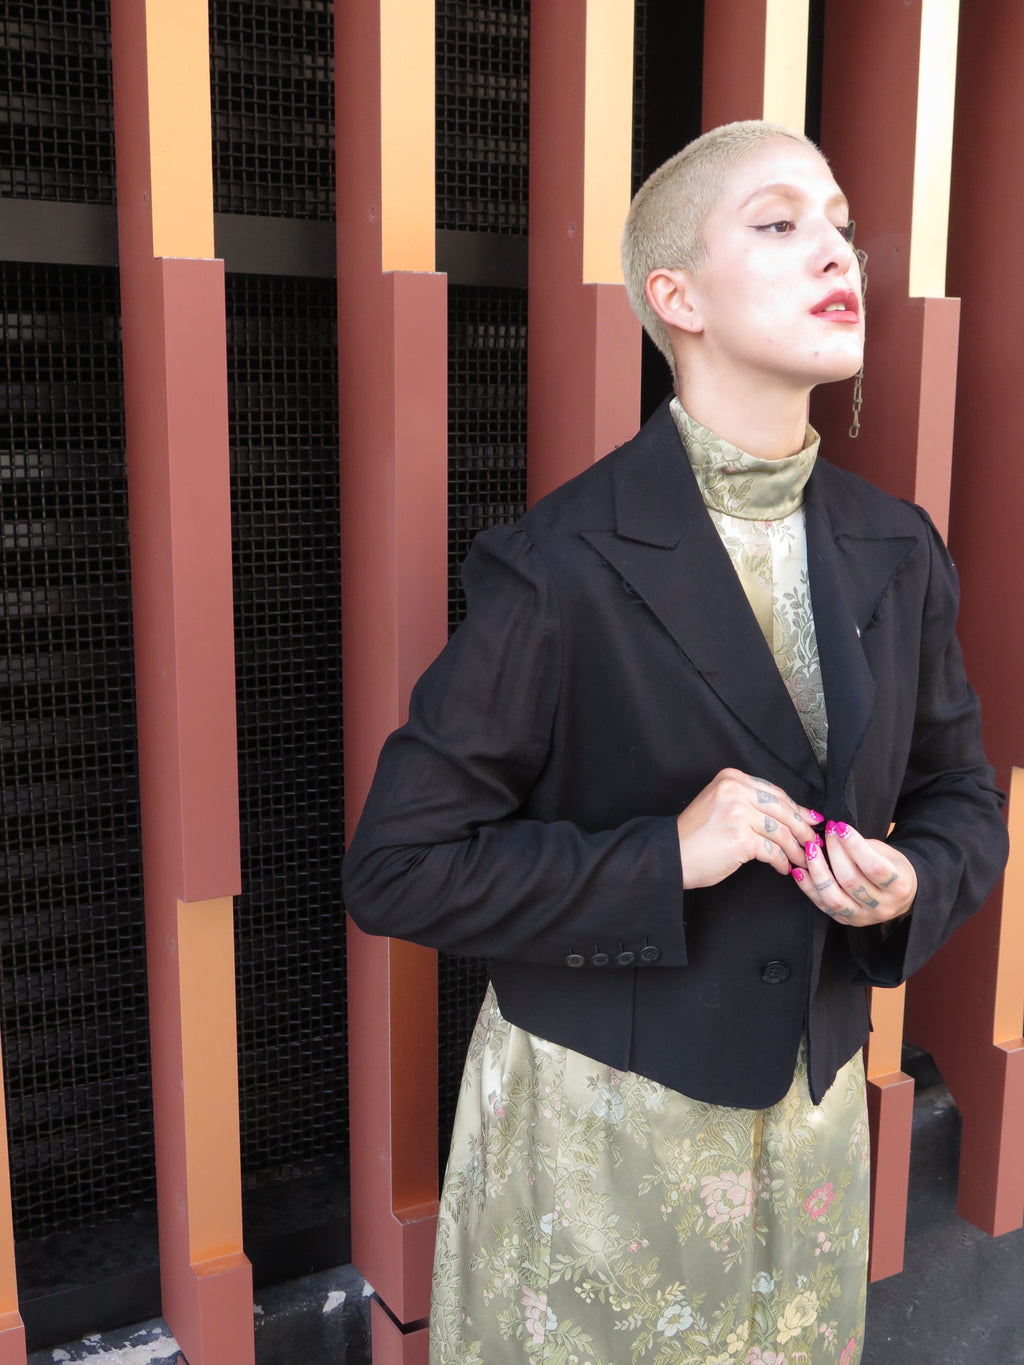 Yohji Yamamoto Noir + Sheer Panel Cotton Tuxedo Jacket